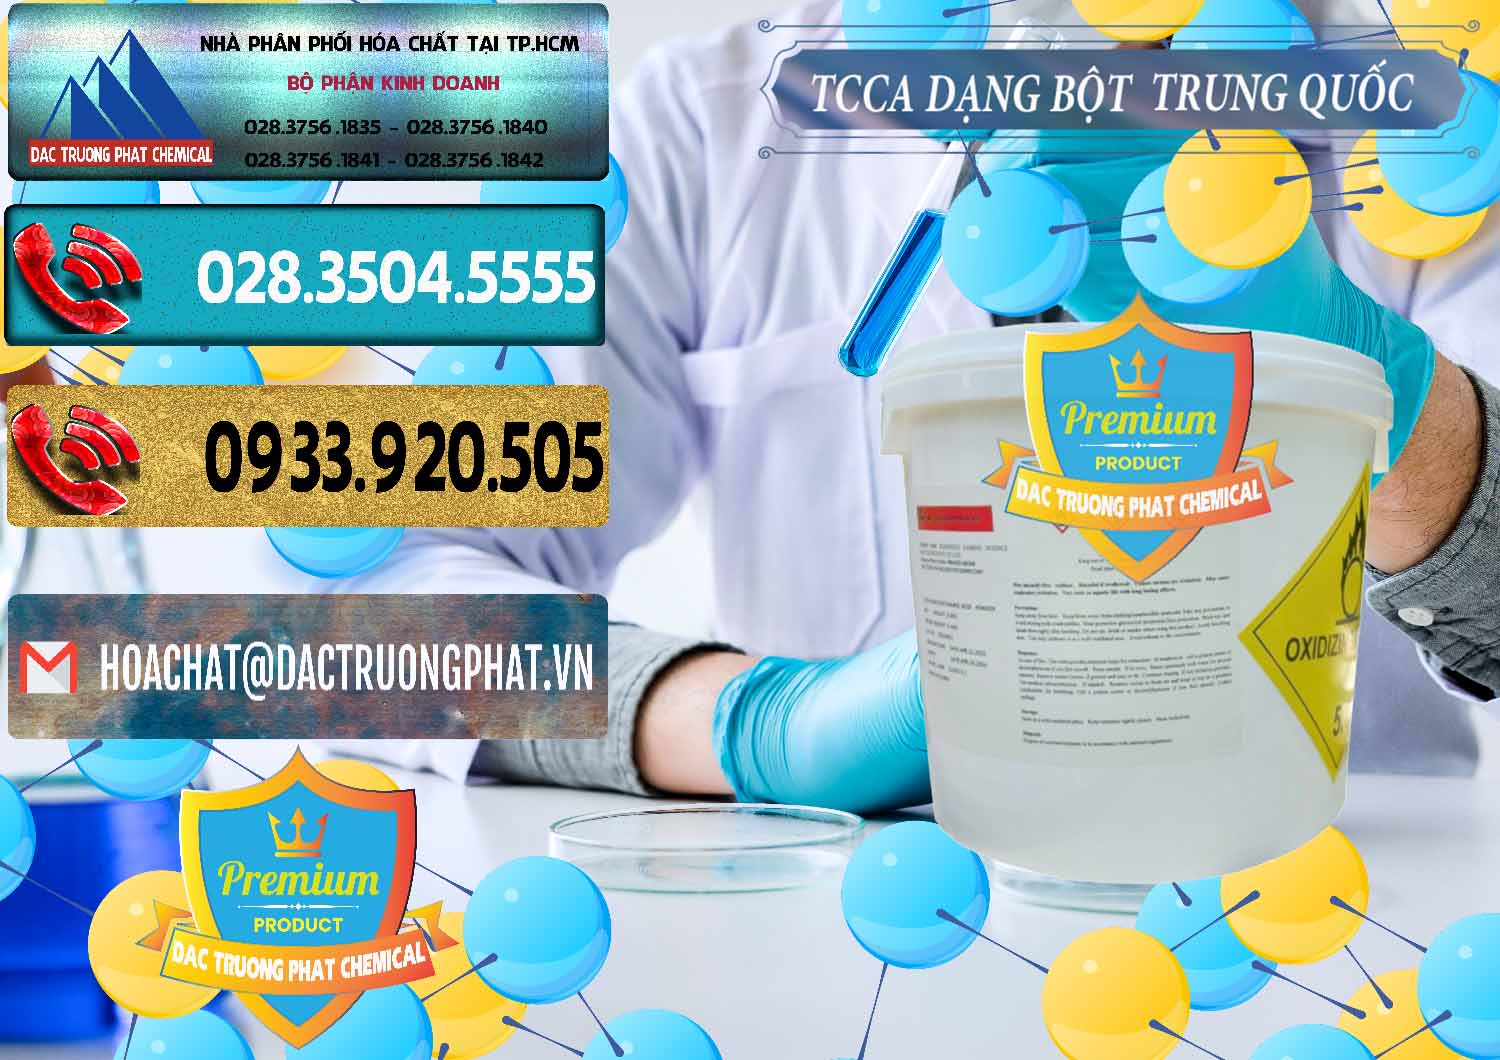 Cty chuyên nhập khẩu _ bán TCCA - Acid Trichloroisocyanuric Dạng Bột Thùng 5kg Trung Quốc China - 0378 - Công ty cung cấp & kinh doanh hóa chất tại TP.HCM - hoachatdetnhuom.com